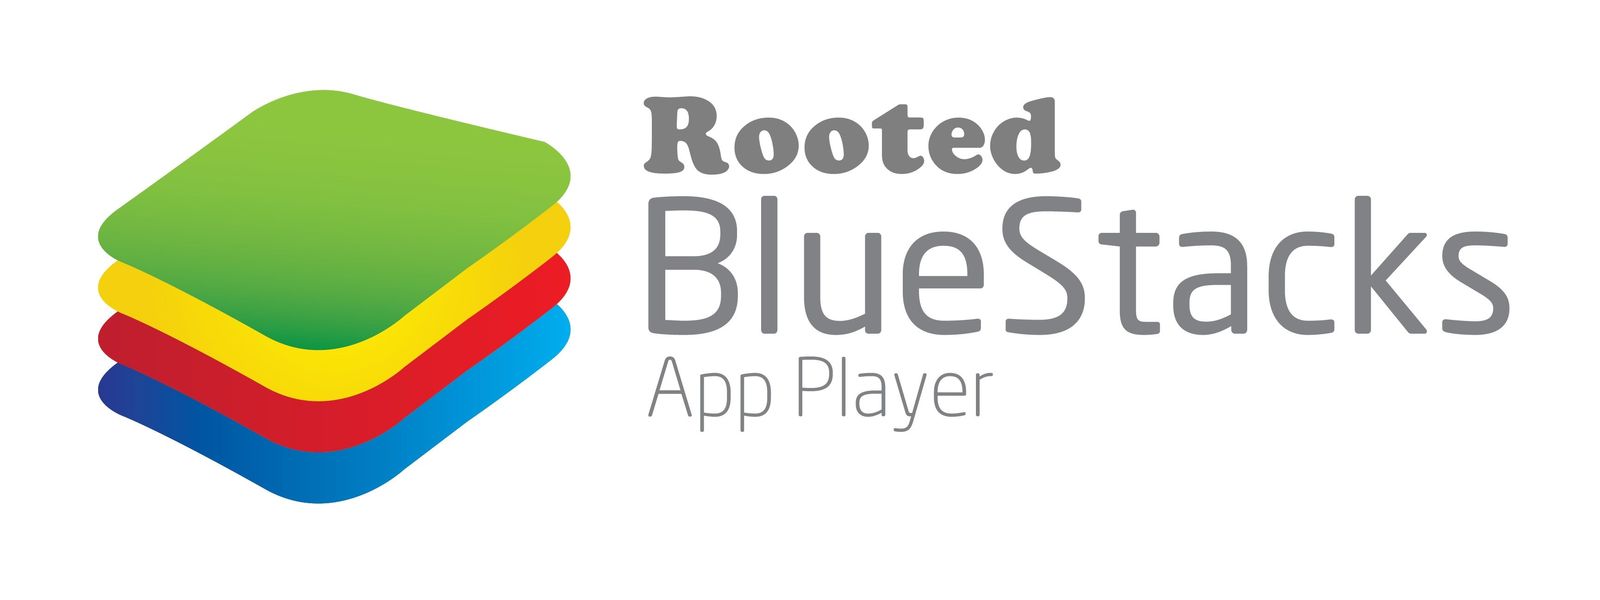 bluestacks-logo.jpg